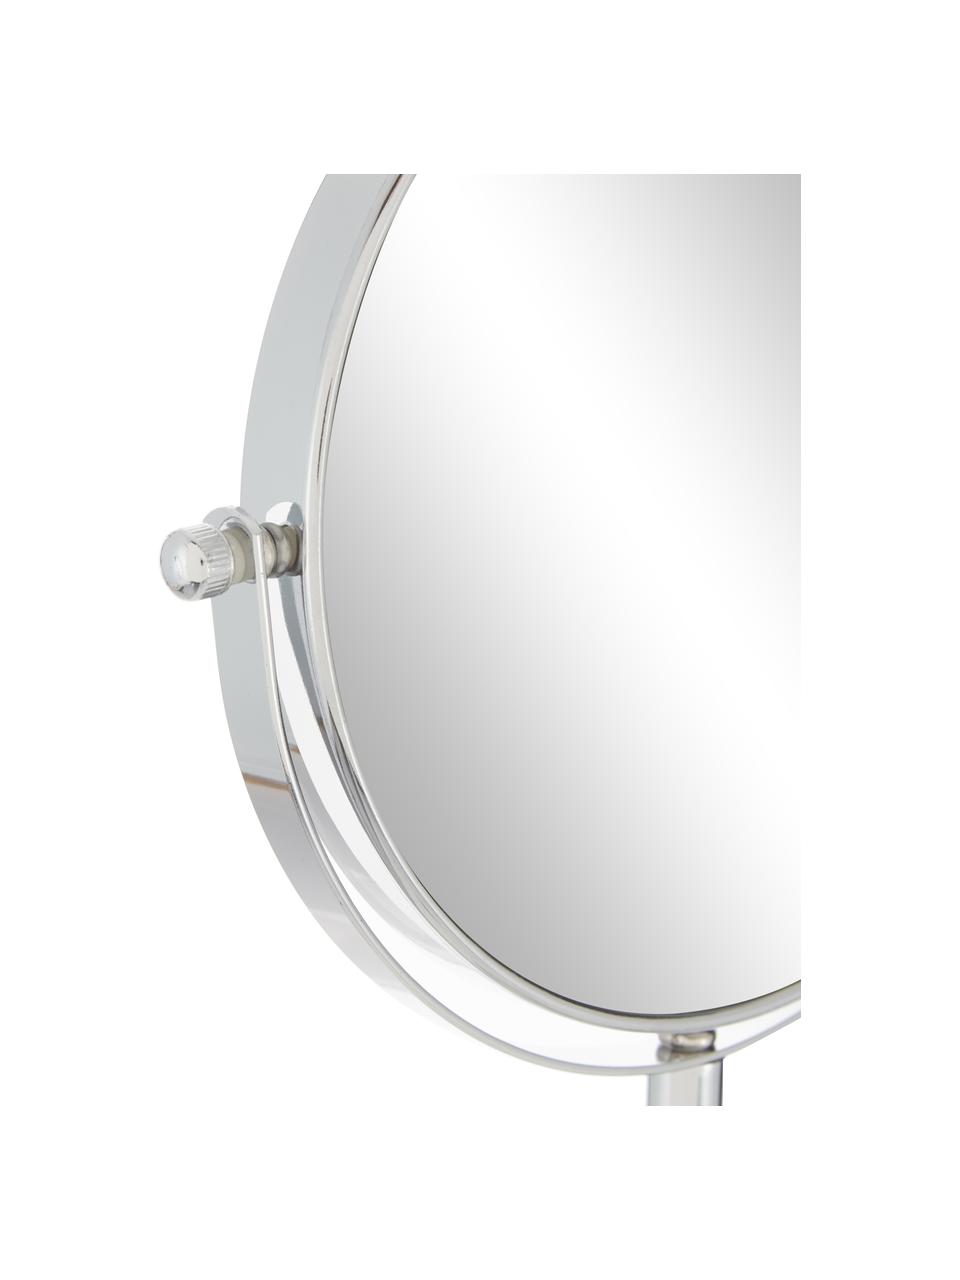 Kosmetikspiegel Copper mit Vergrößerung, Rahmen: Metall, verchromt, Spiegelfläche: Spiegelglas, Weiß, Silberfarben, Ø 20 x H 34 cm